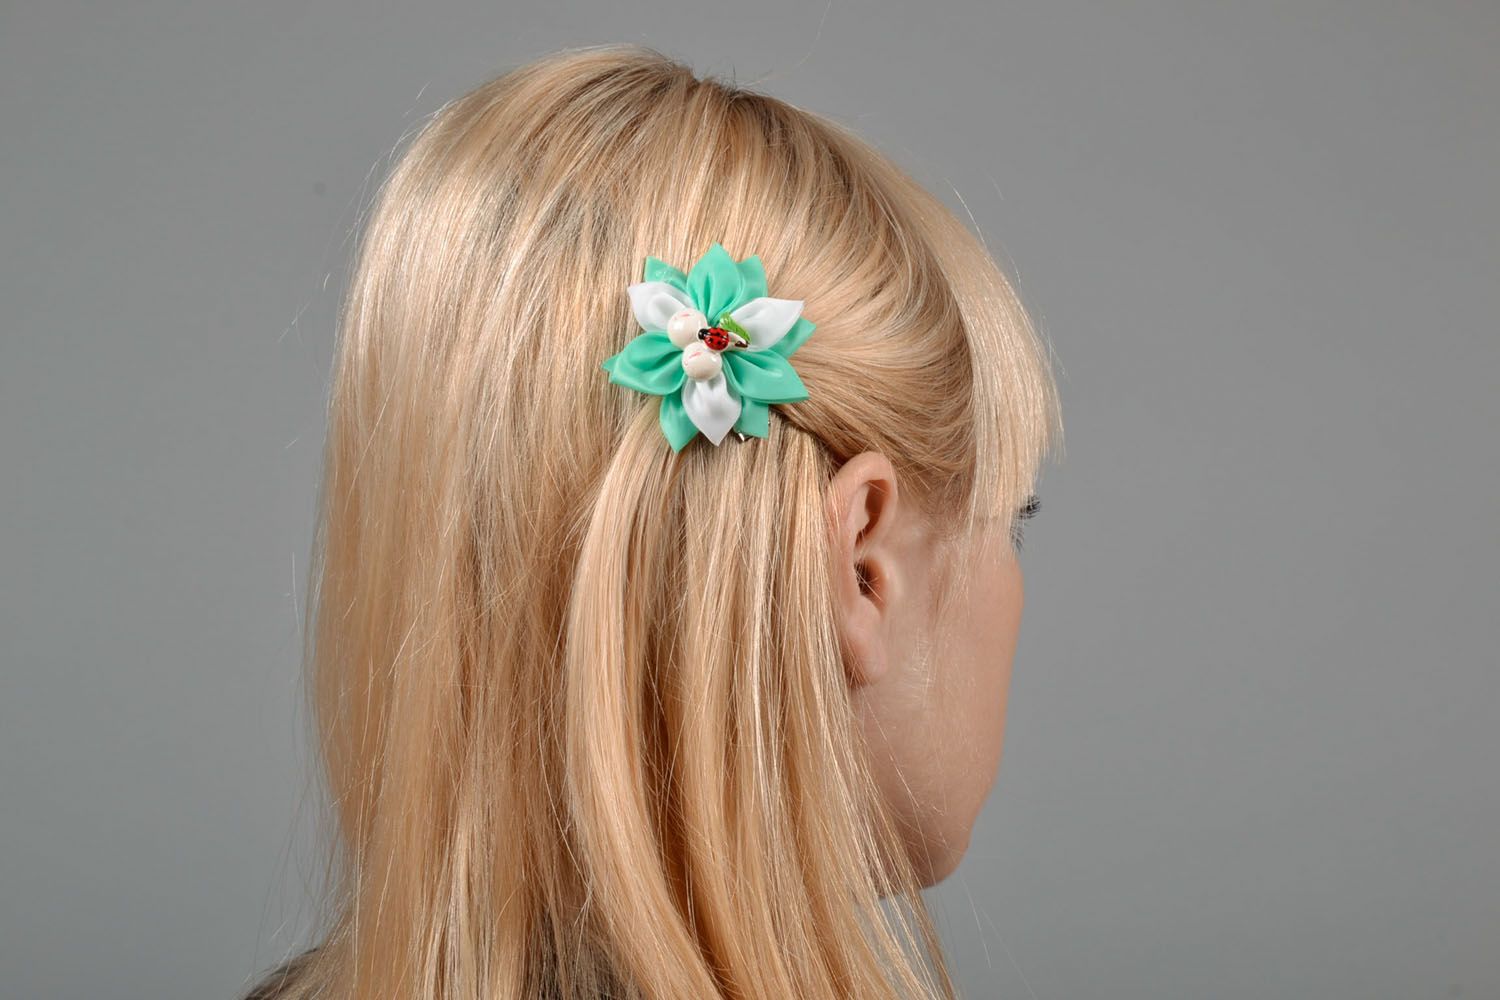 Hair clip made using kanzashi technique photo 1